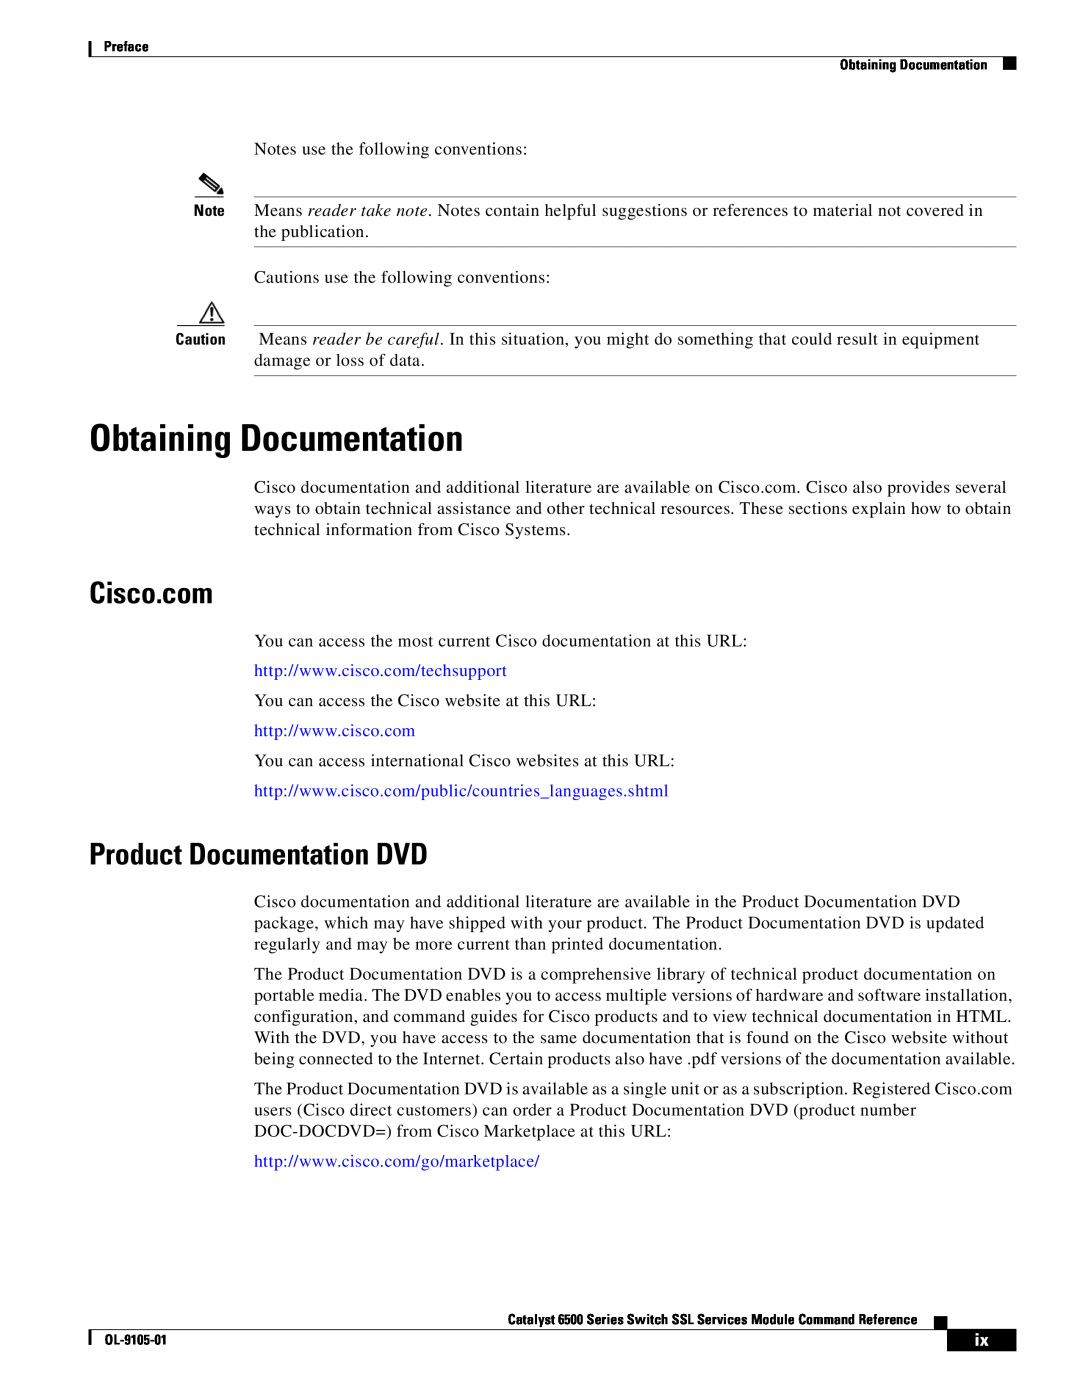 Cisco Systems 6500 manual Obtaining Documentation, Cisco.com, Product Documentation DVD 